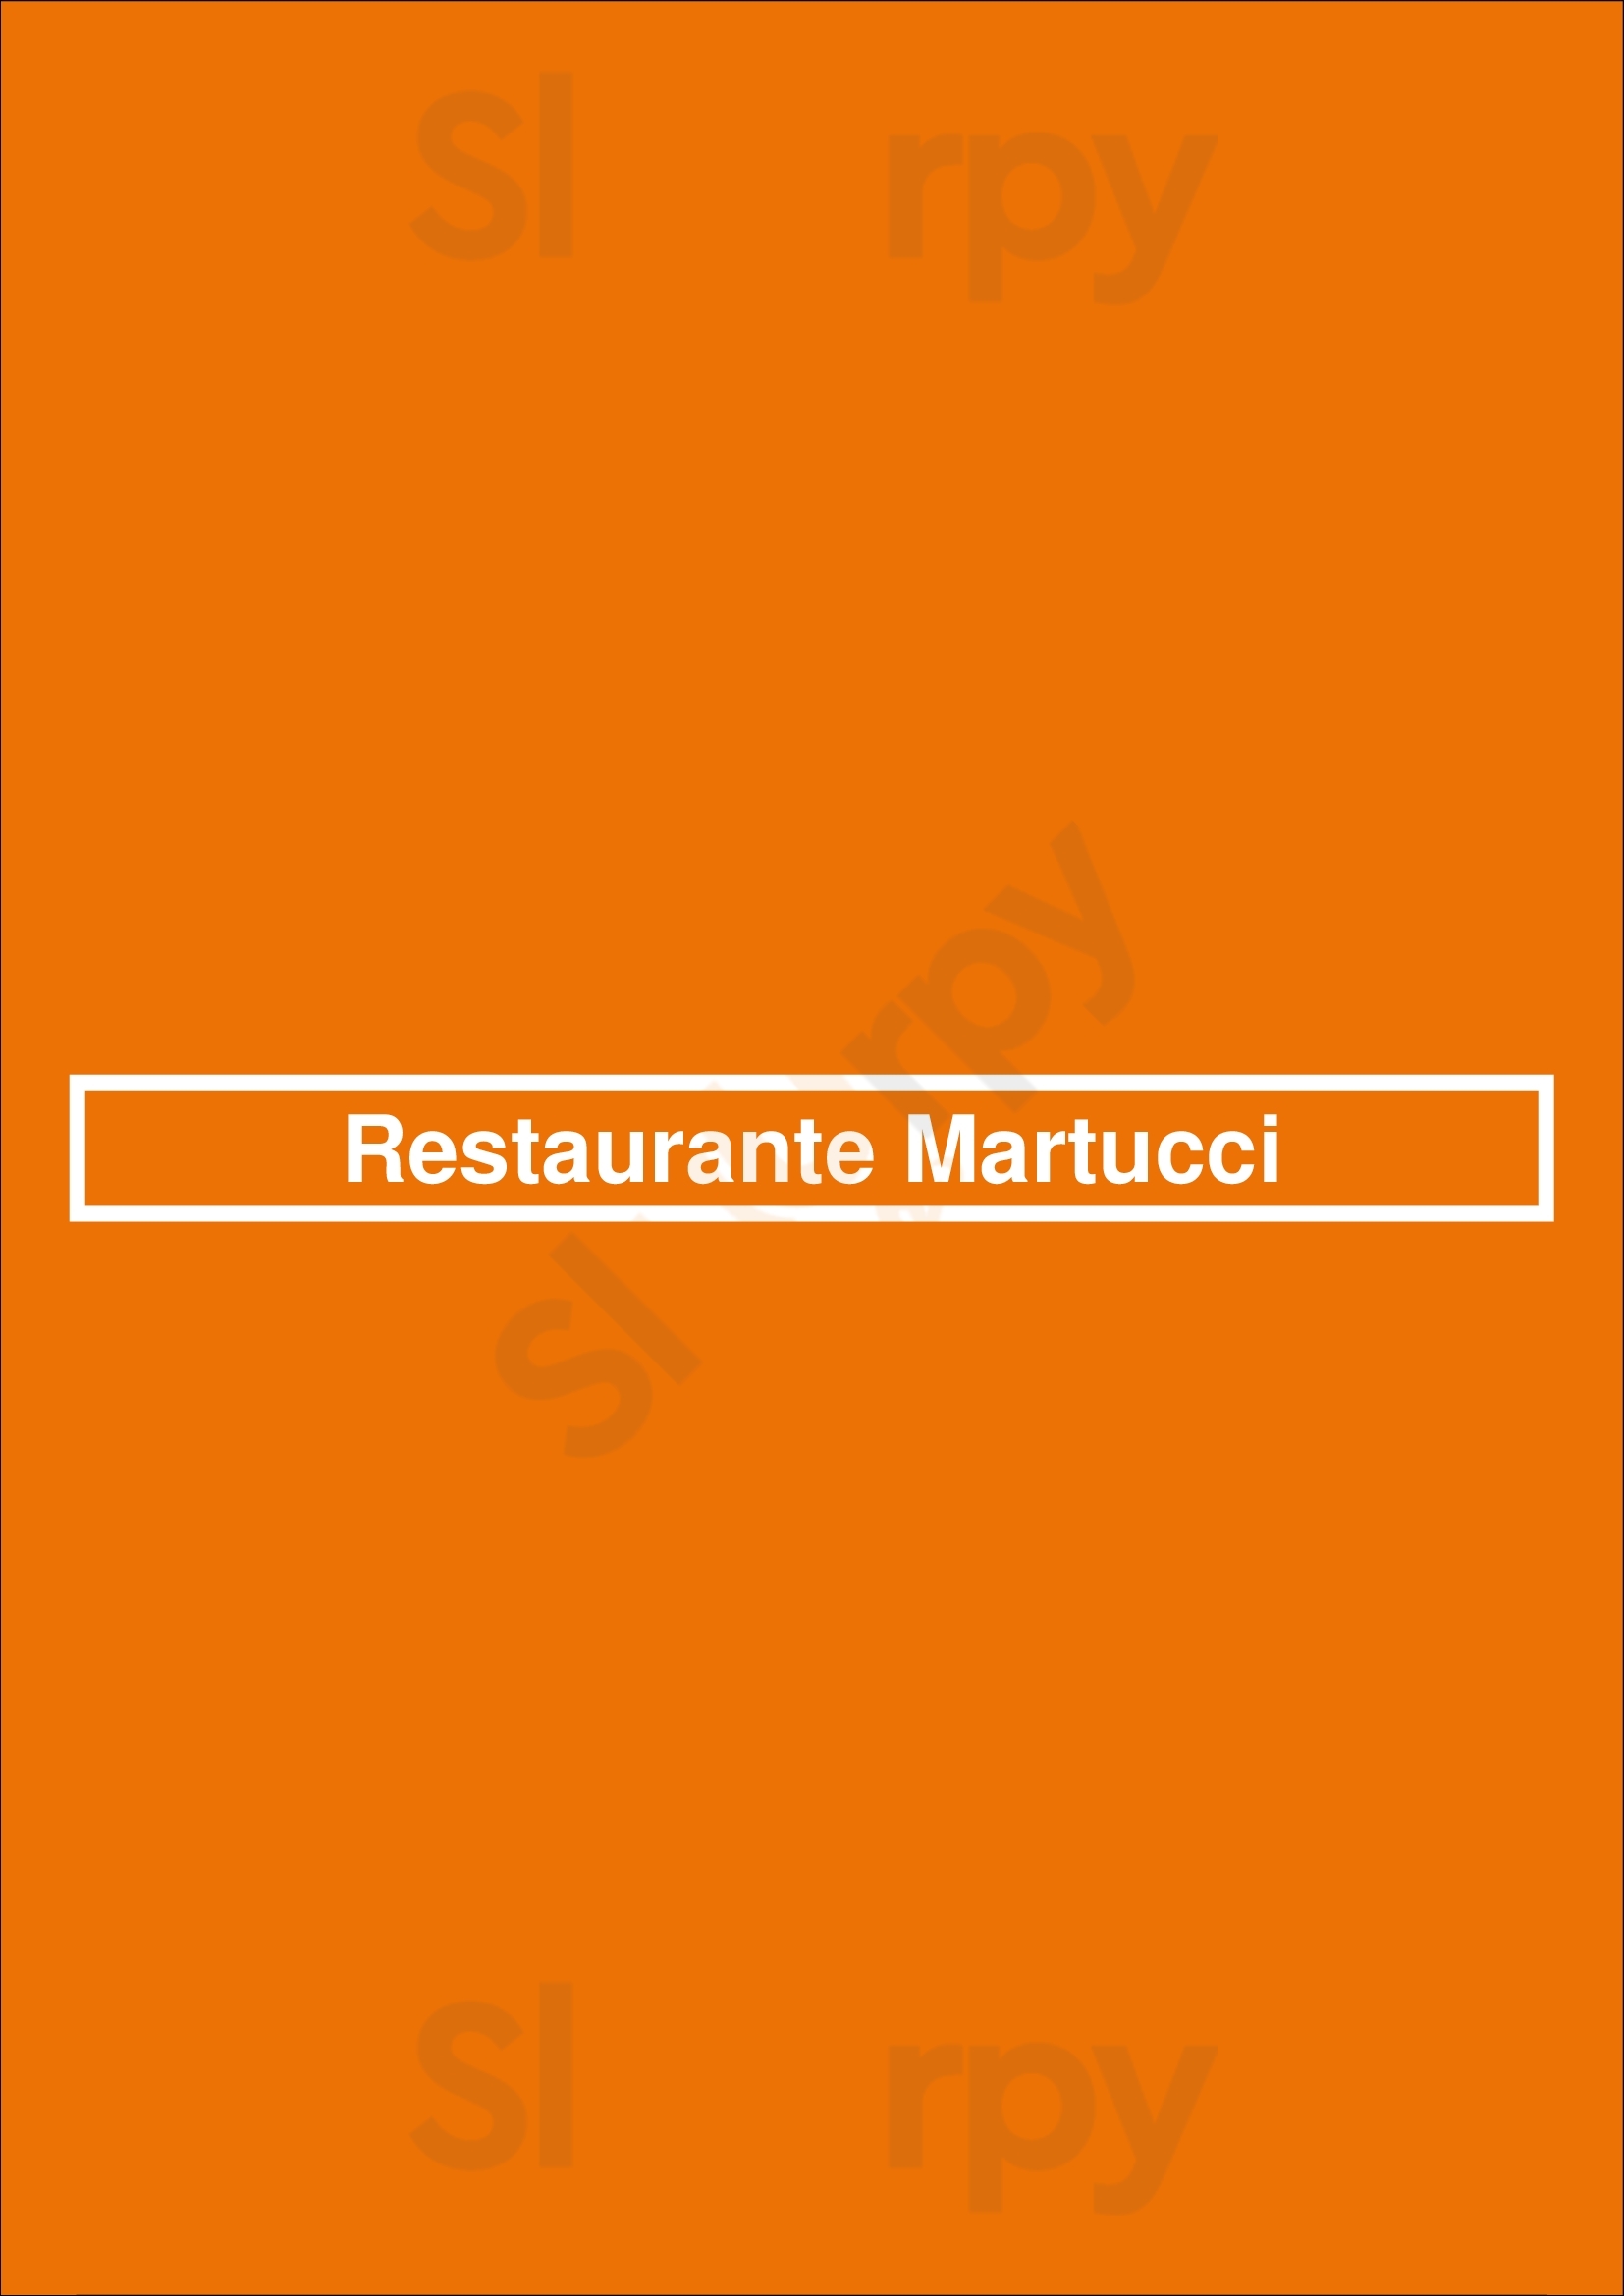 Restaurante Martucci Funchal Menu - 1